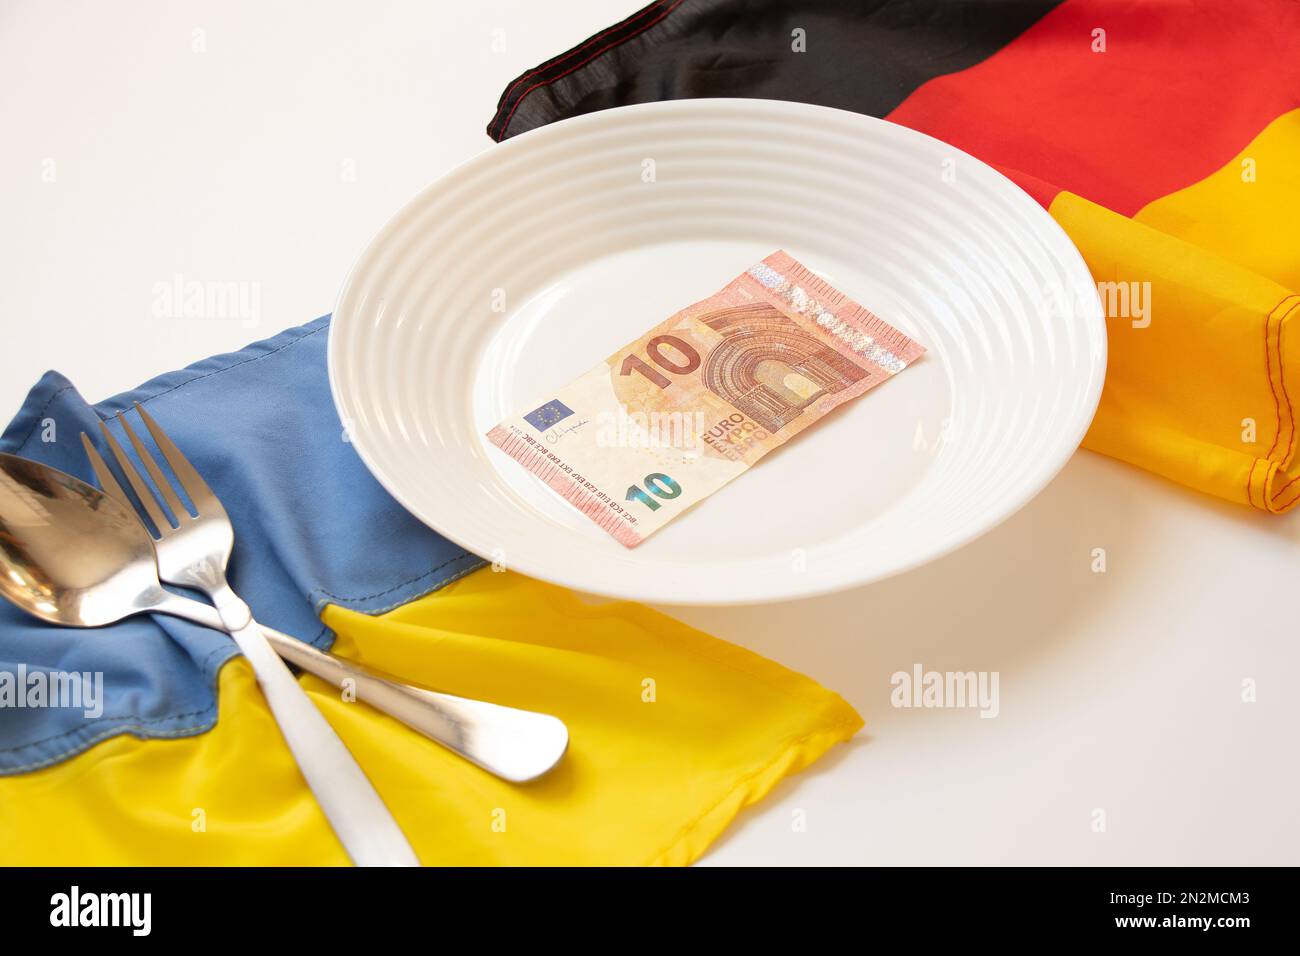 Die Flaggen der Ukraine und Deutschlands liegen in der Nähe eines Tellers mit 10 Euro auf weißem Hintergrund, Wirtschaft und Finanzen, finanzielle Unterstützung für die Ukraine Stockfoto